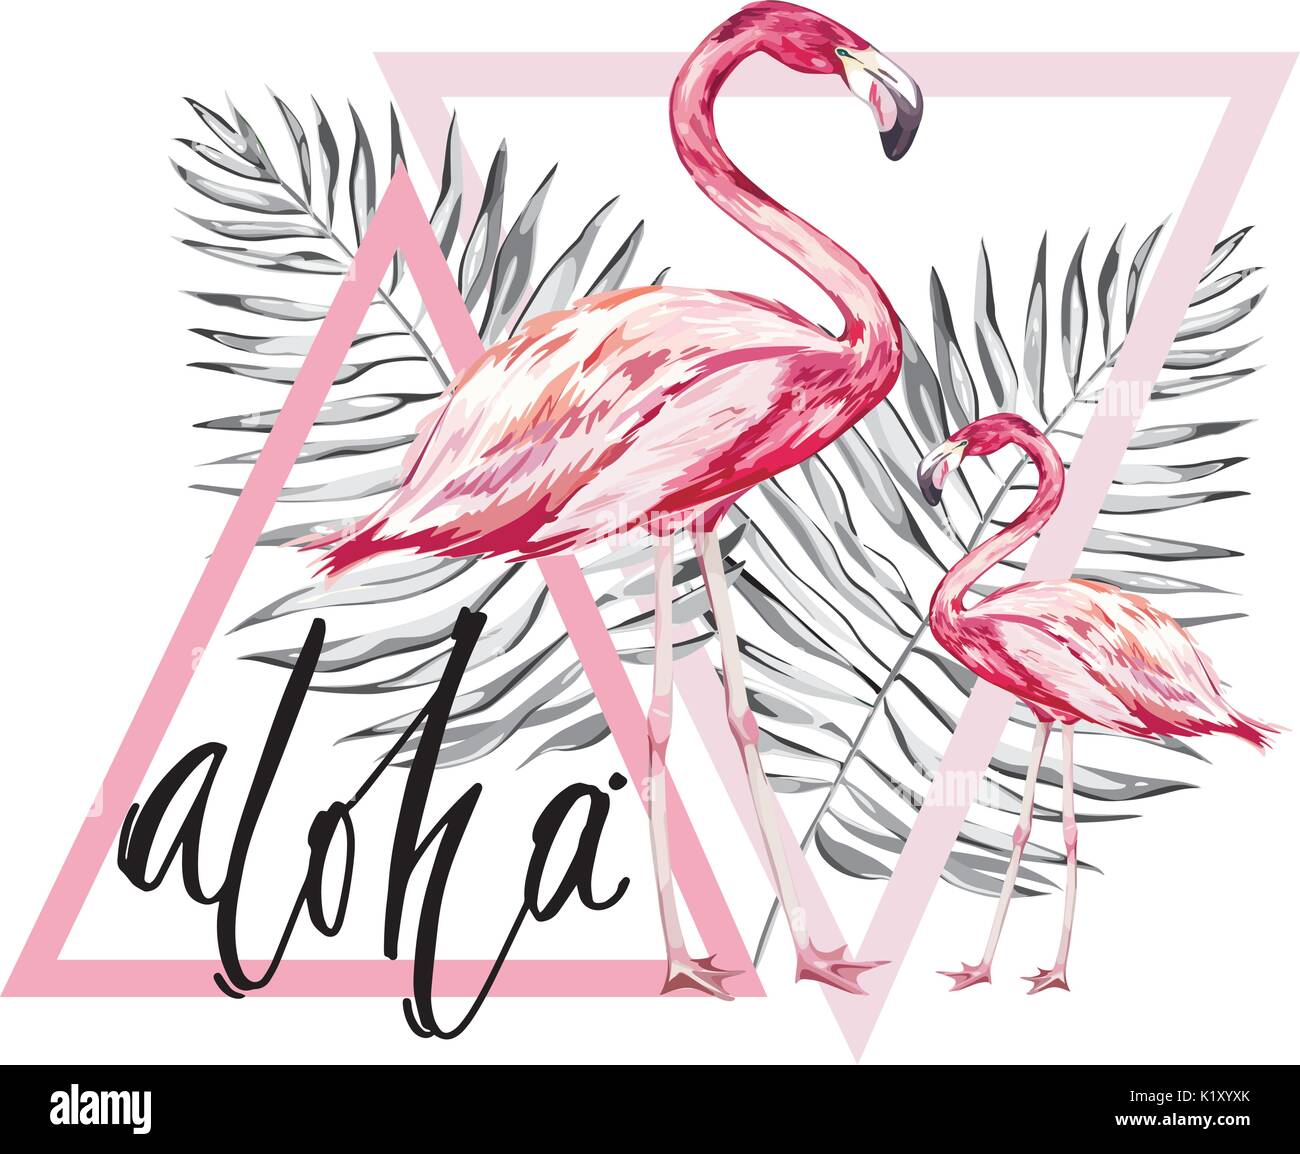 Wort - Aloha. Zwei Flamingos mit tropischen Blättern. Element für die Gestaltung von Einladungen, Filmplakate, Stoffen und anderen Objekten. Auf weiß isoliert. Geometrie gesetzt wird. Vector EPS 10. Stock Vektor